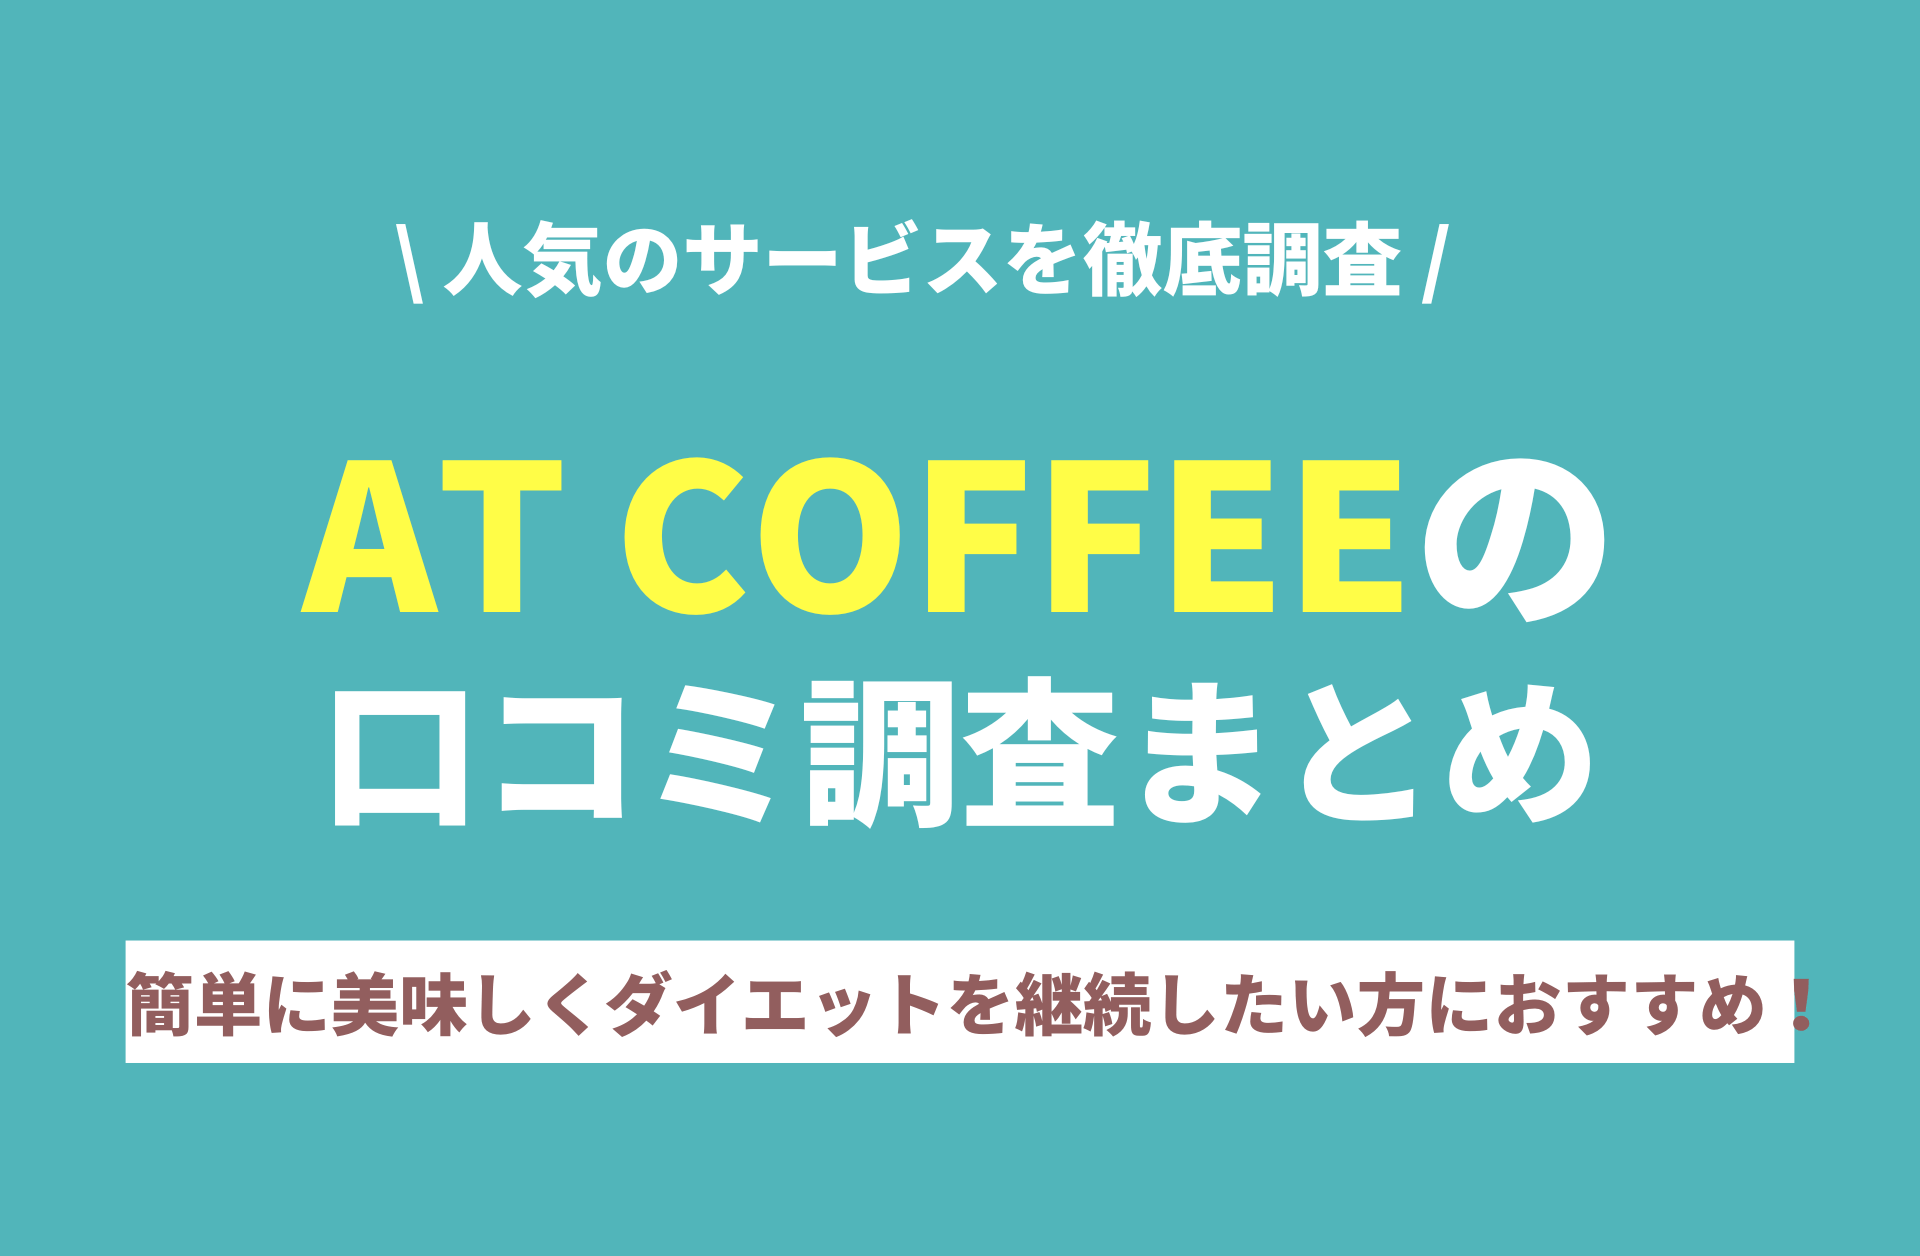 【在庫低価】ダイエットコーヒー AT COFFEE 4点袋 コーヒー